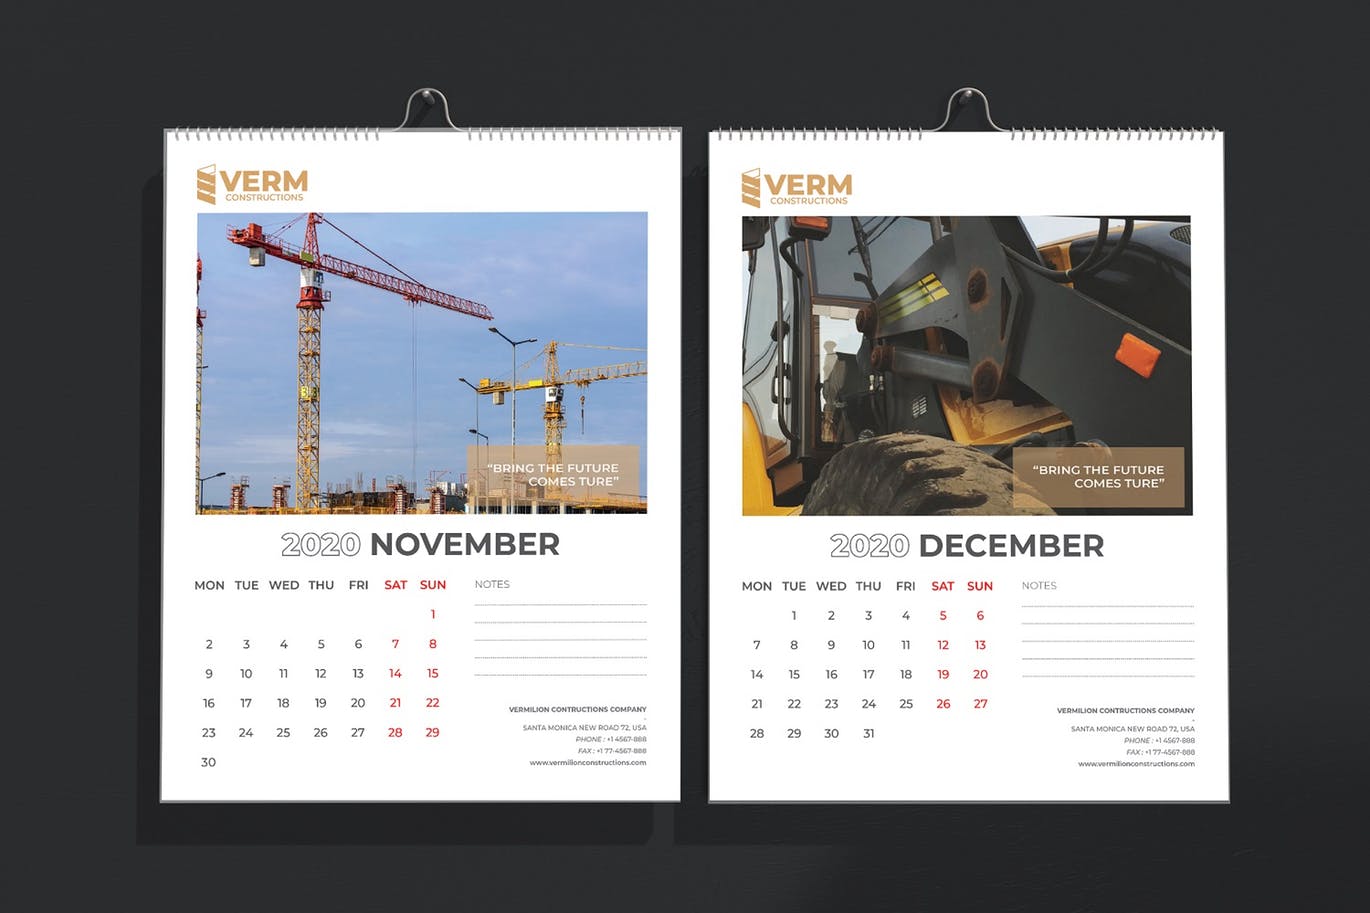 2020年建筑主题台历&挂墙日历表设计模板 Construction Wall & Table Calendar 2020插图8